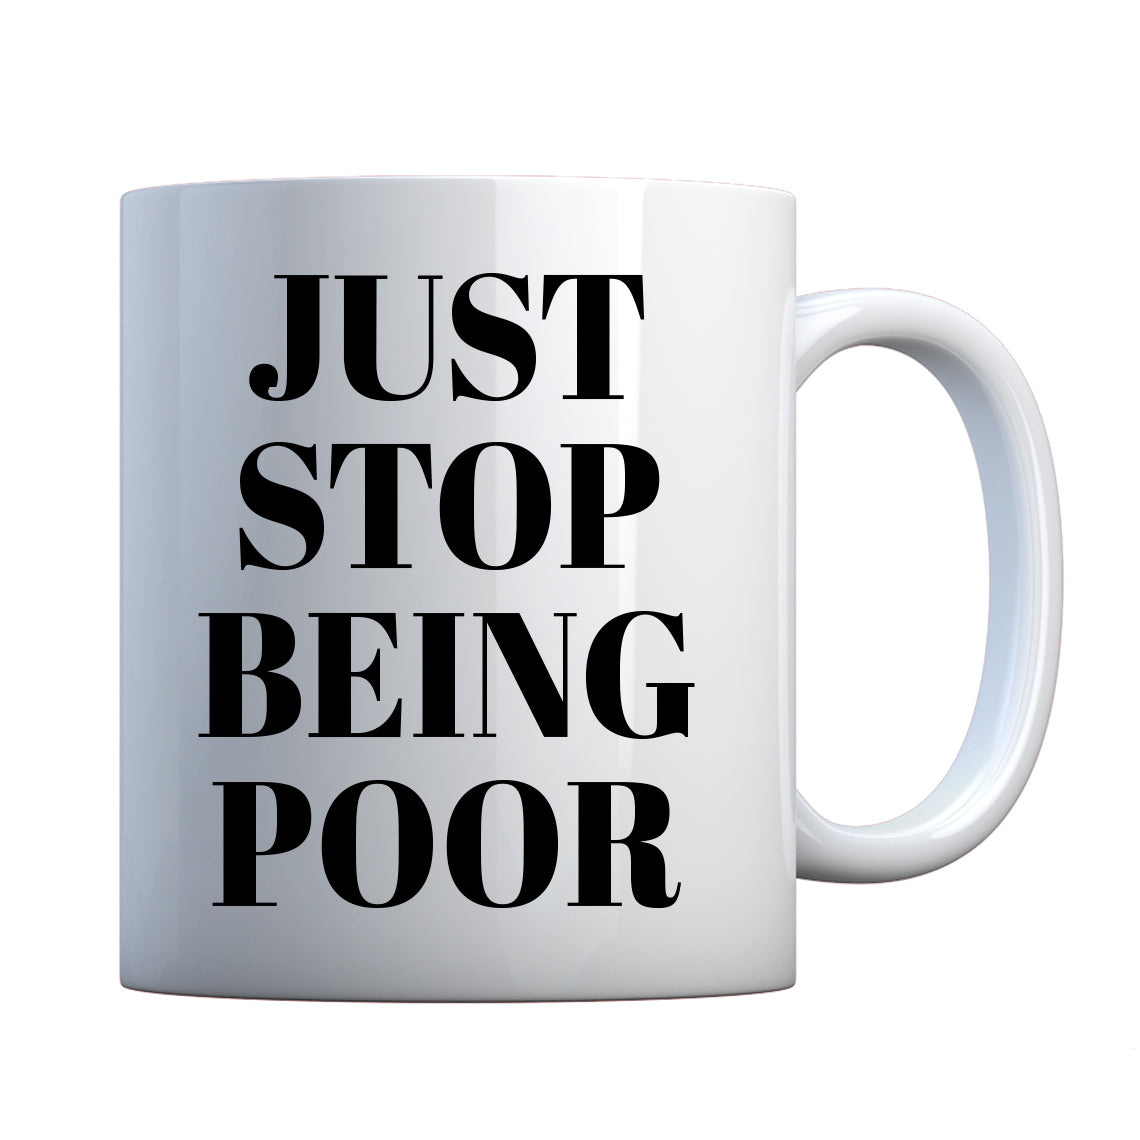 Just Stop Being Poor Ceramic Gift Mug